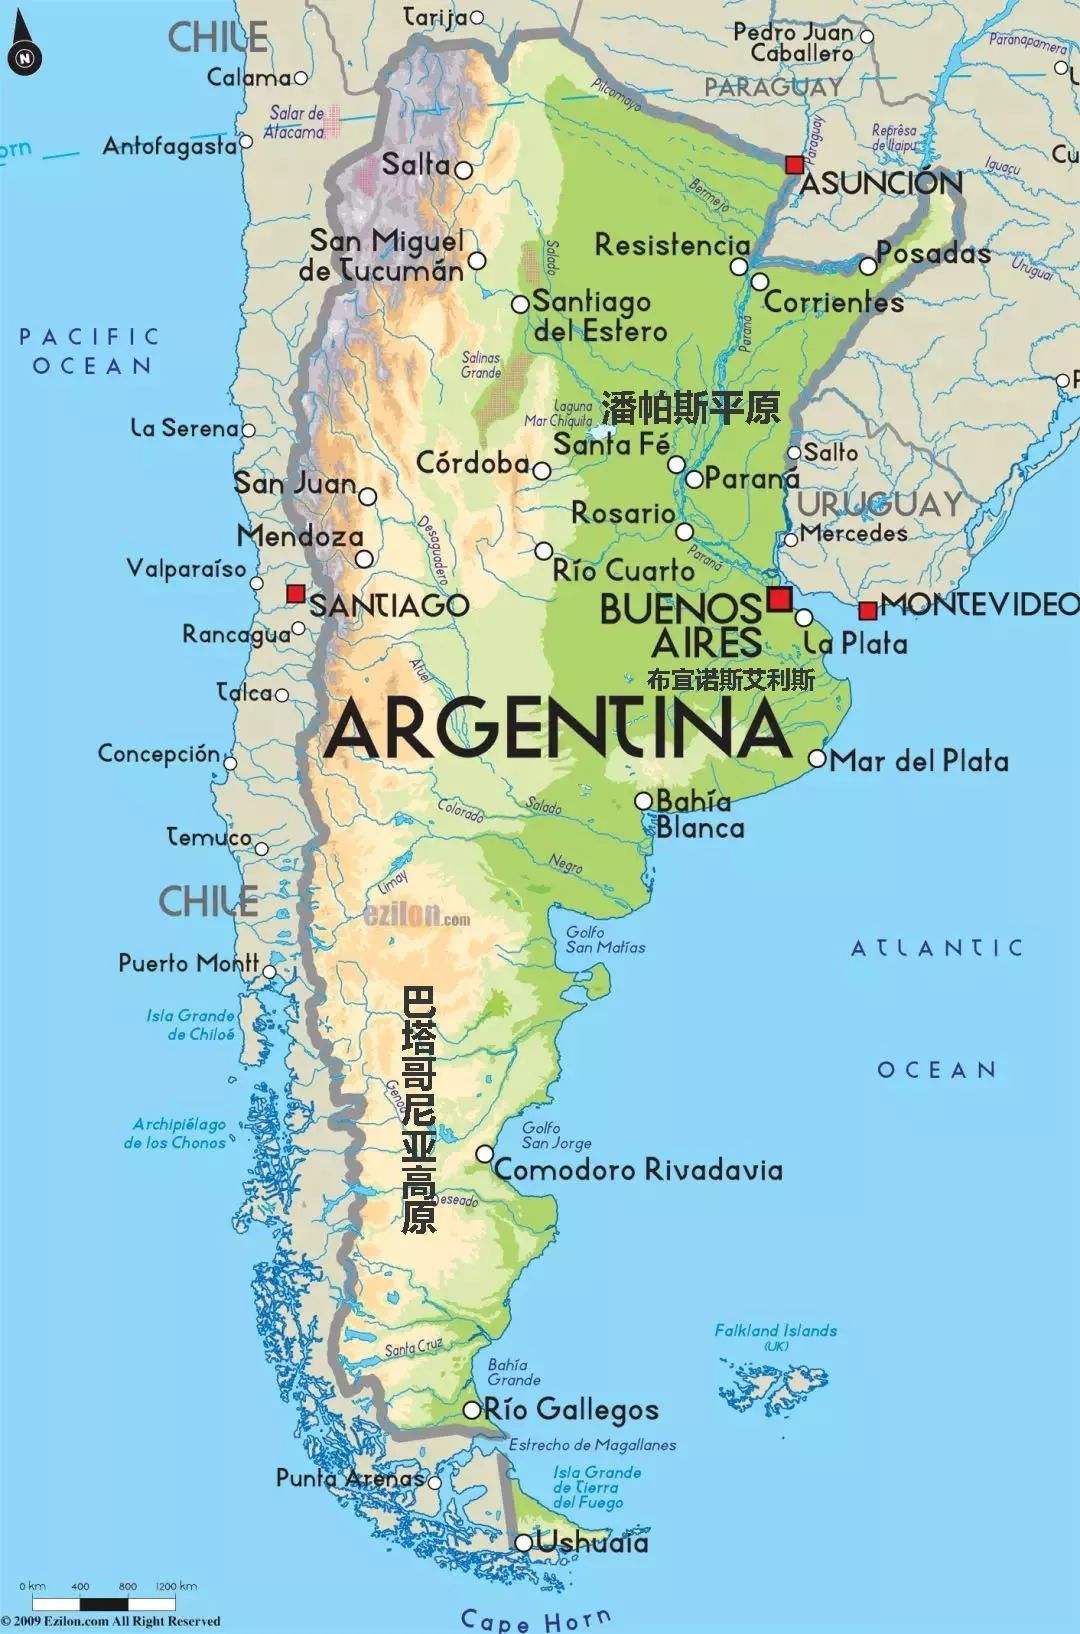 agenting-阿根廷比索兑换人民币